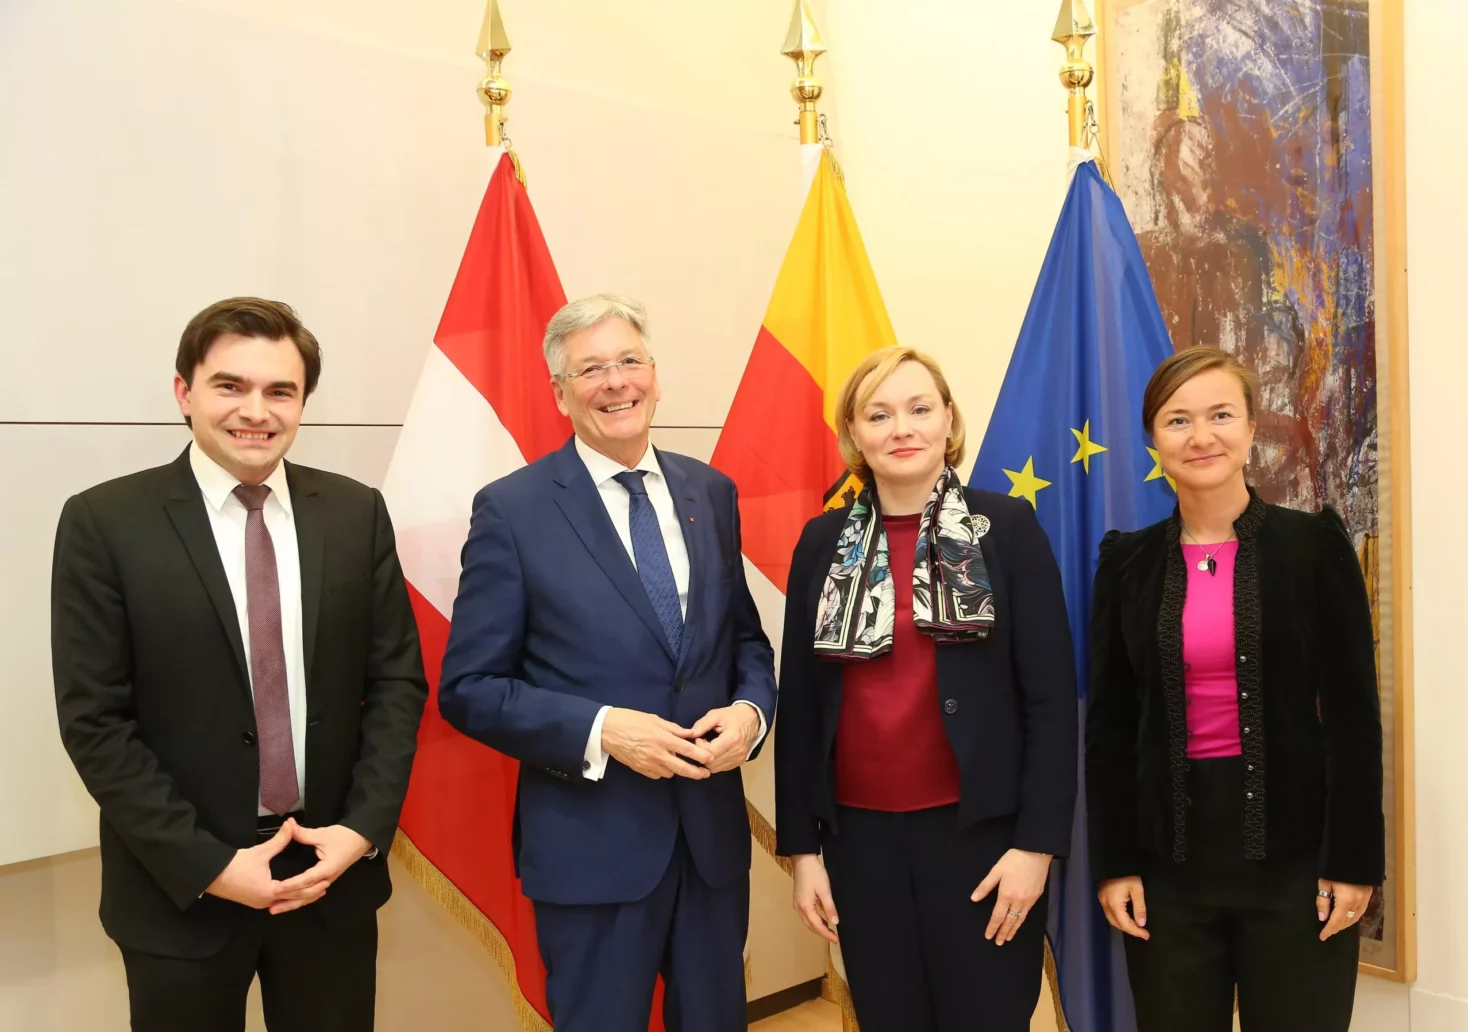 Lettland zu Gast in Kärnten: Botschafterin zeigt sich begeistert